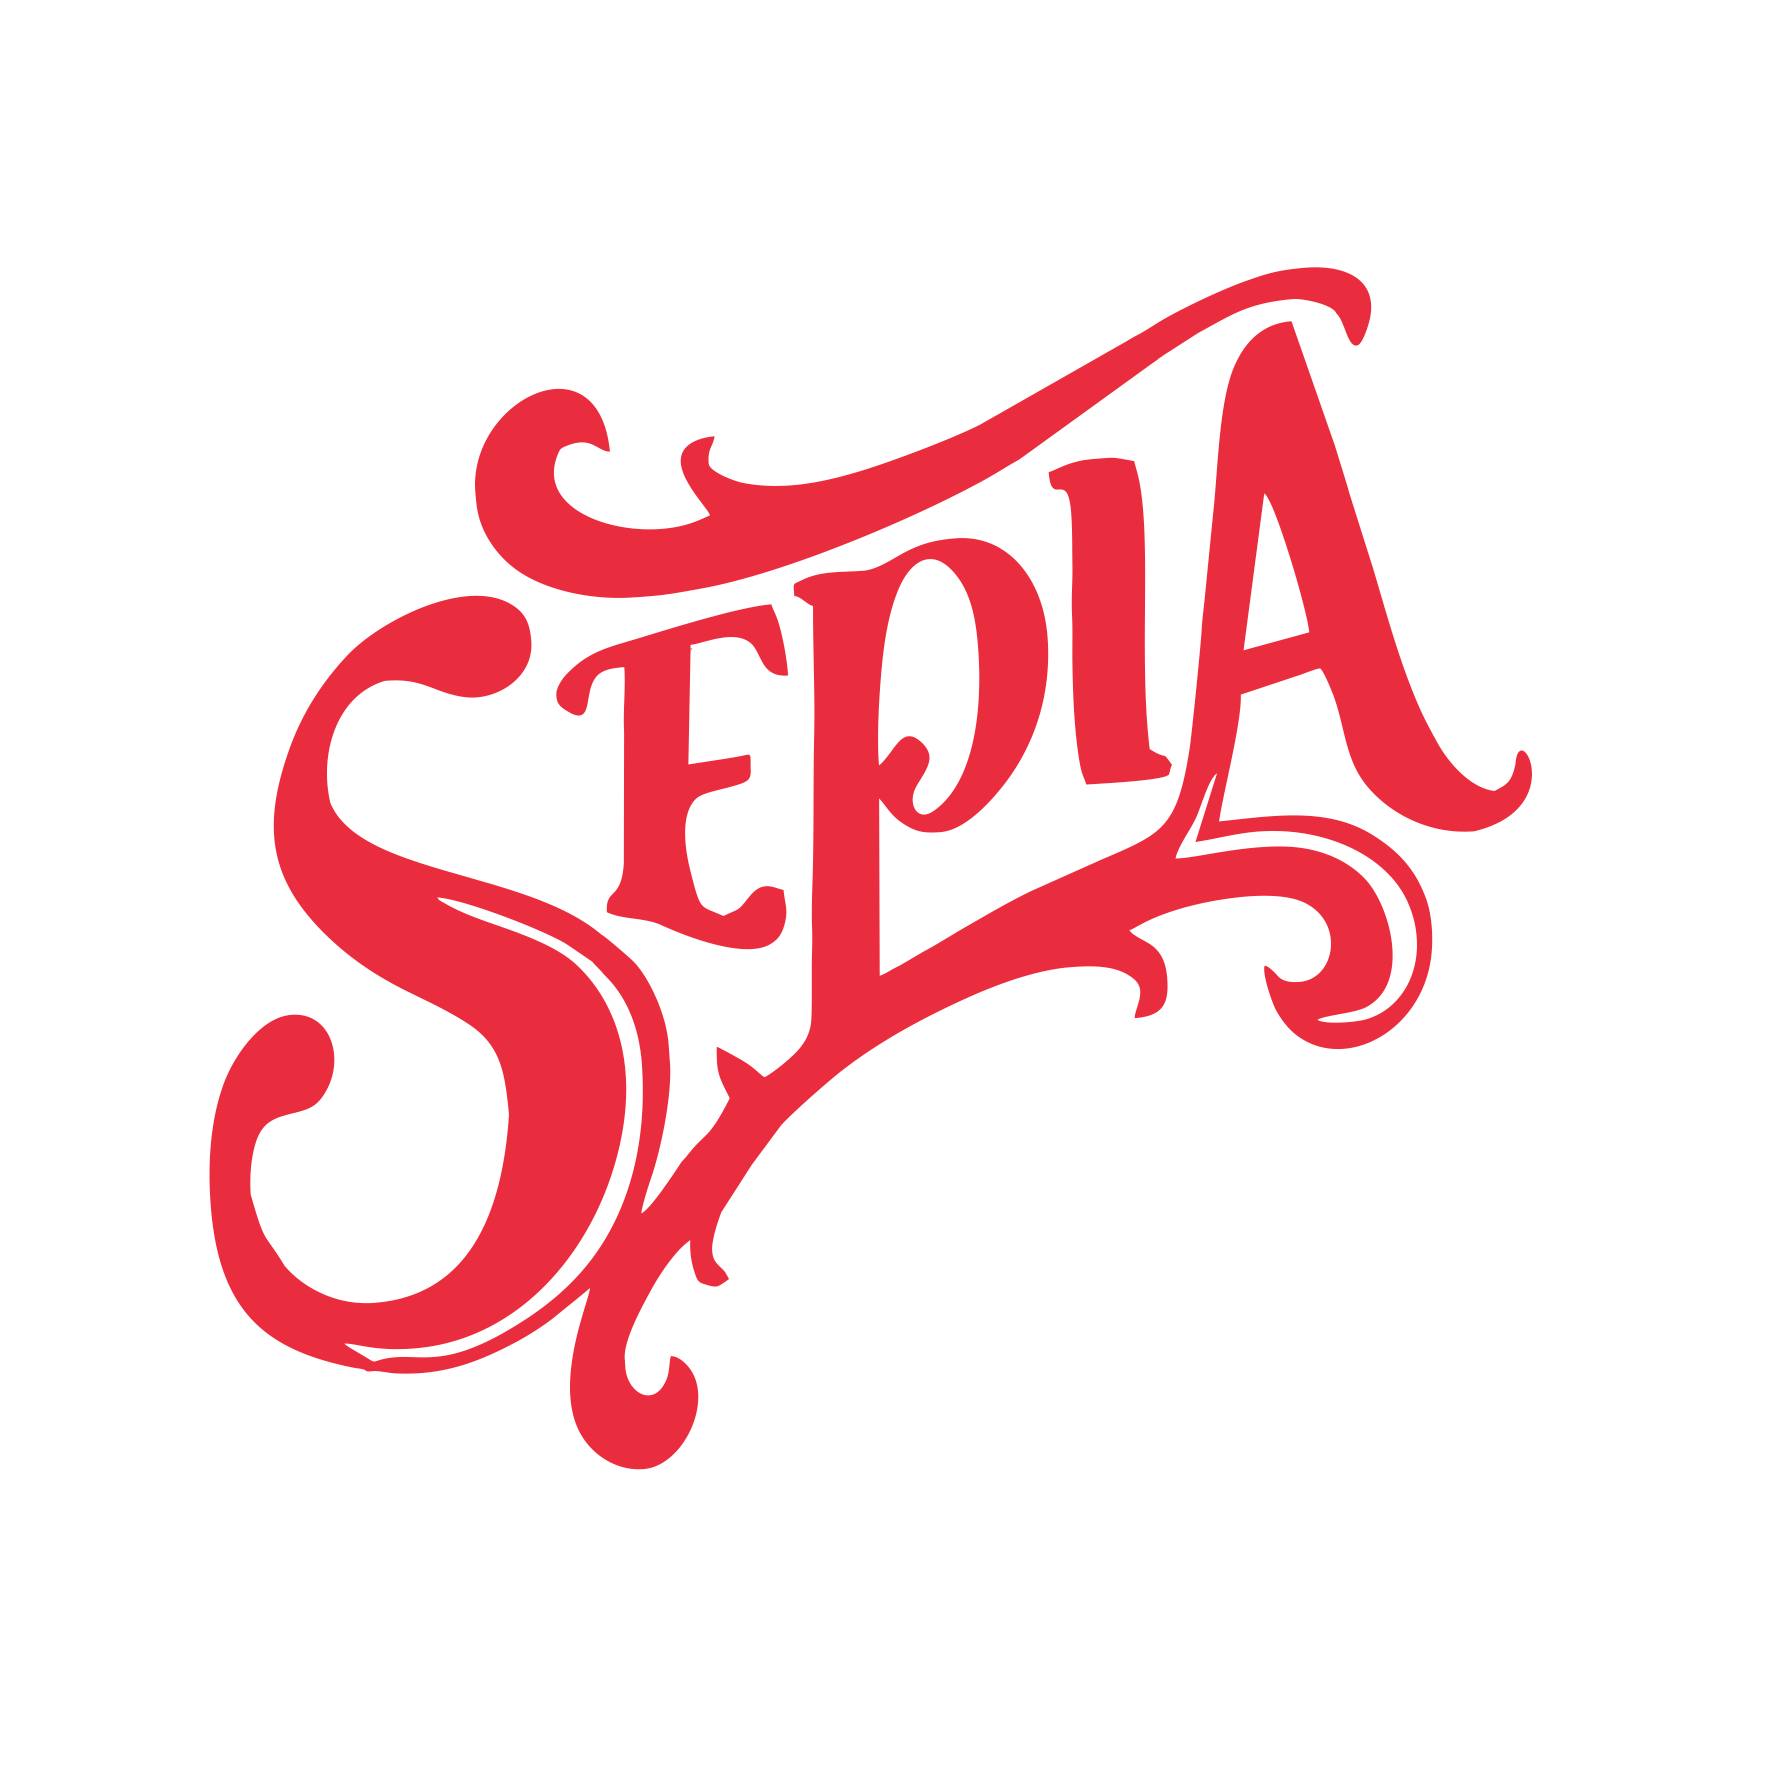  Wielkie otwarcie Sepii logo lokalu